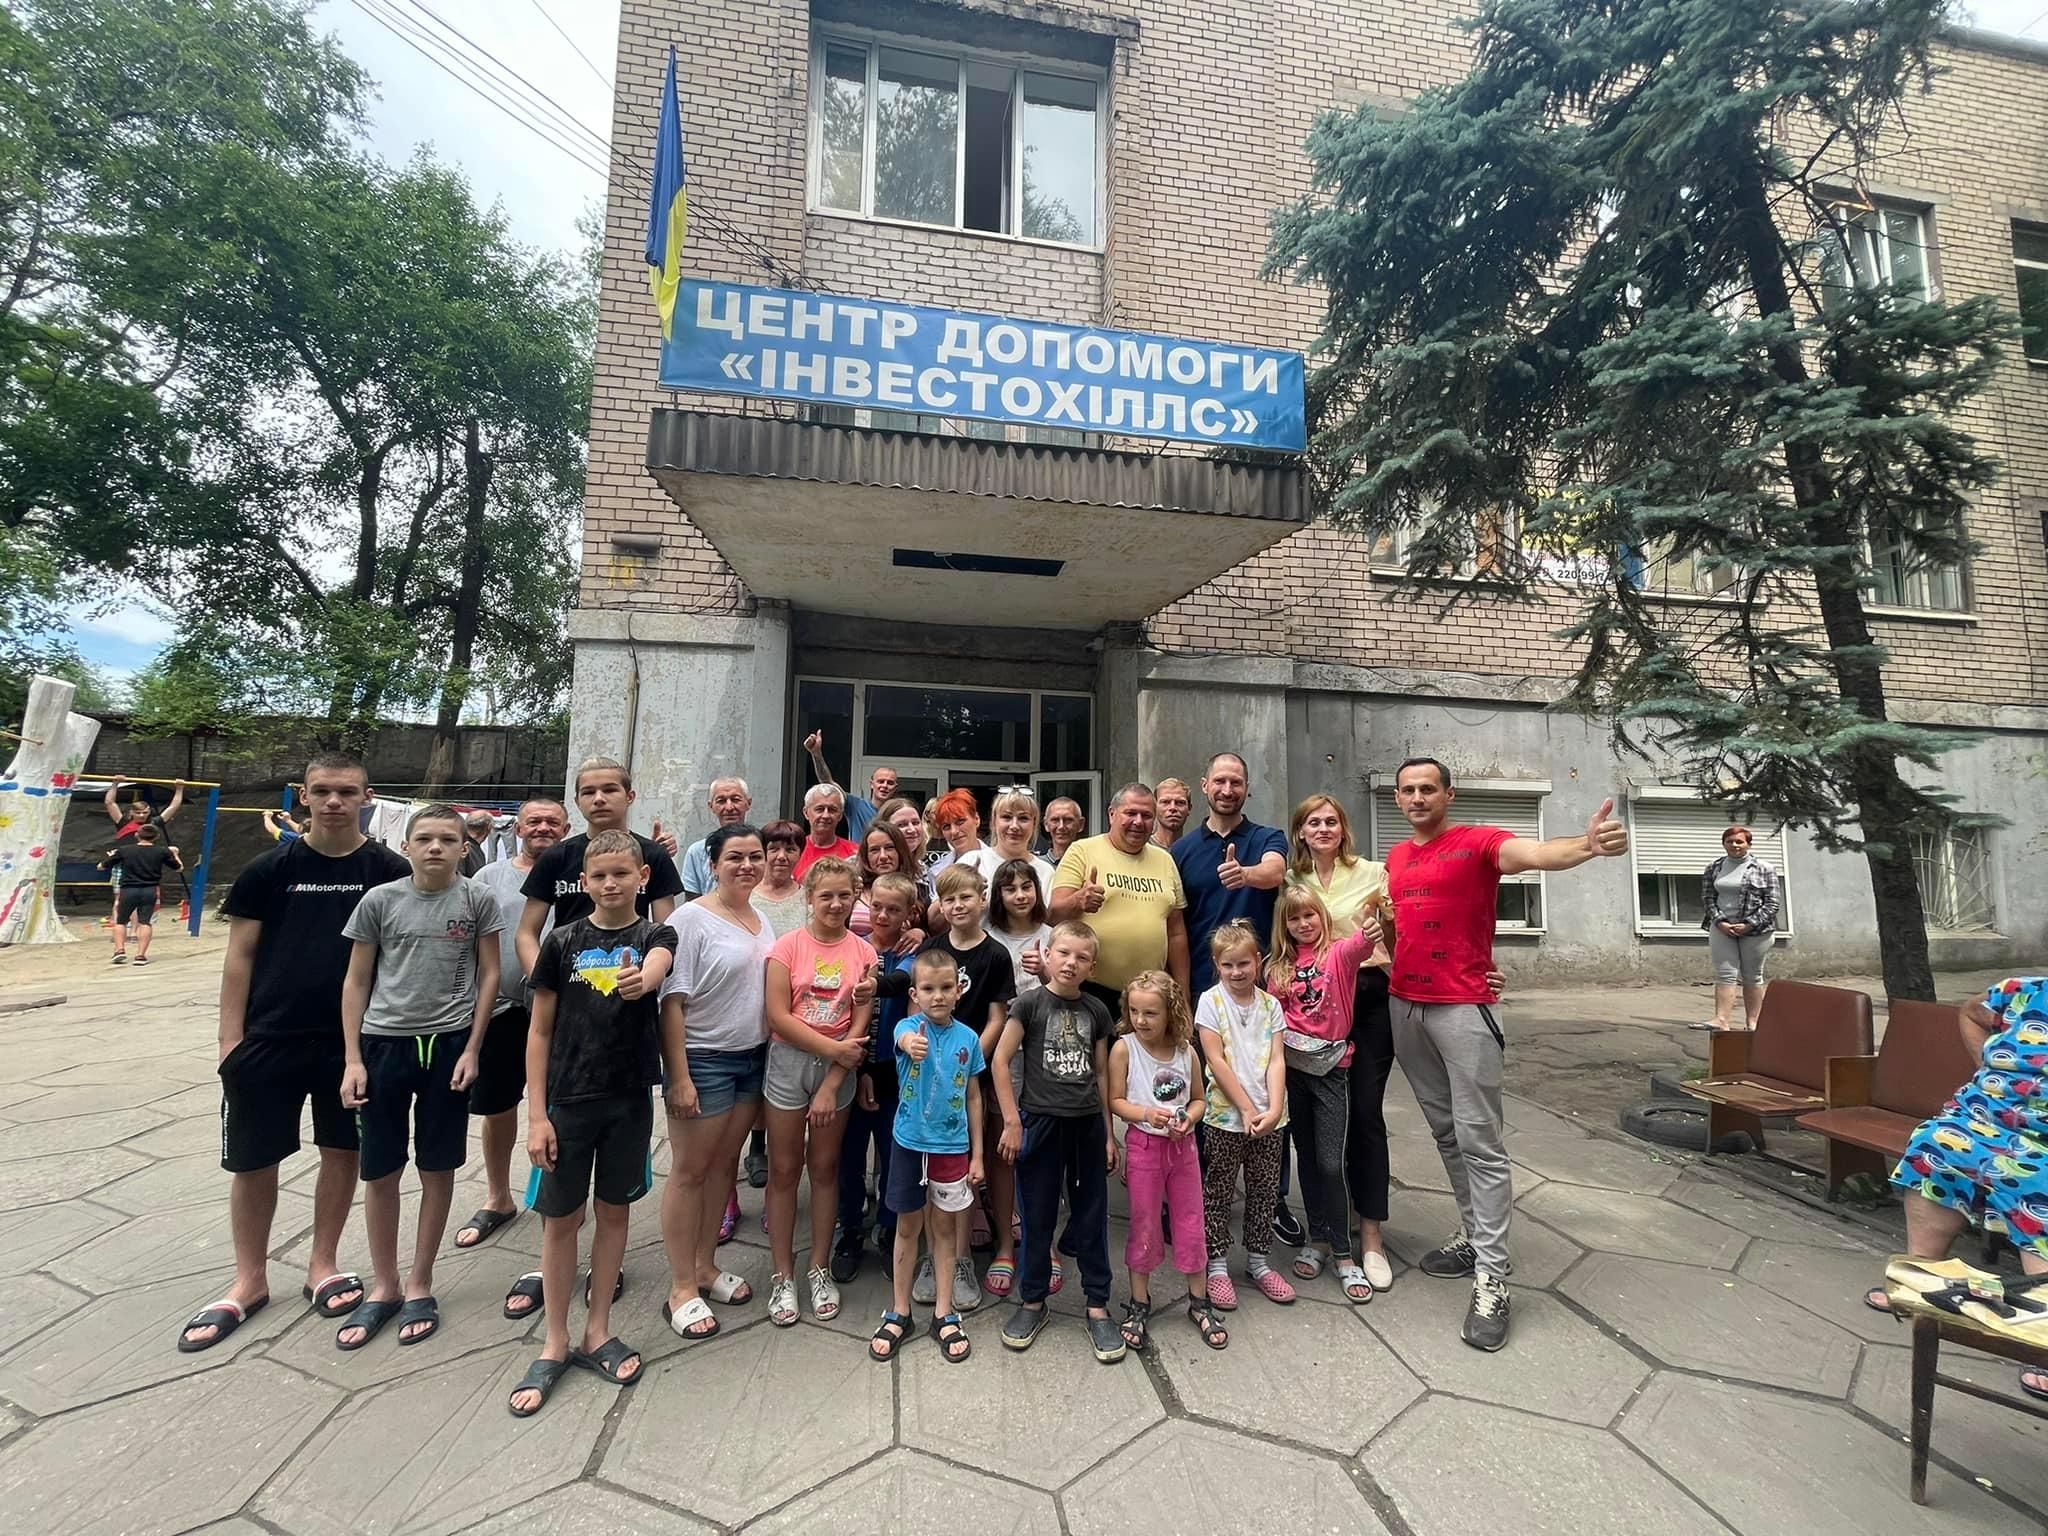 За год работы Центра помощи "Инвестохиллс" в Запорожье нашли убежище 700 ВПЛ